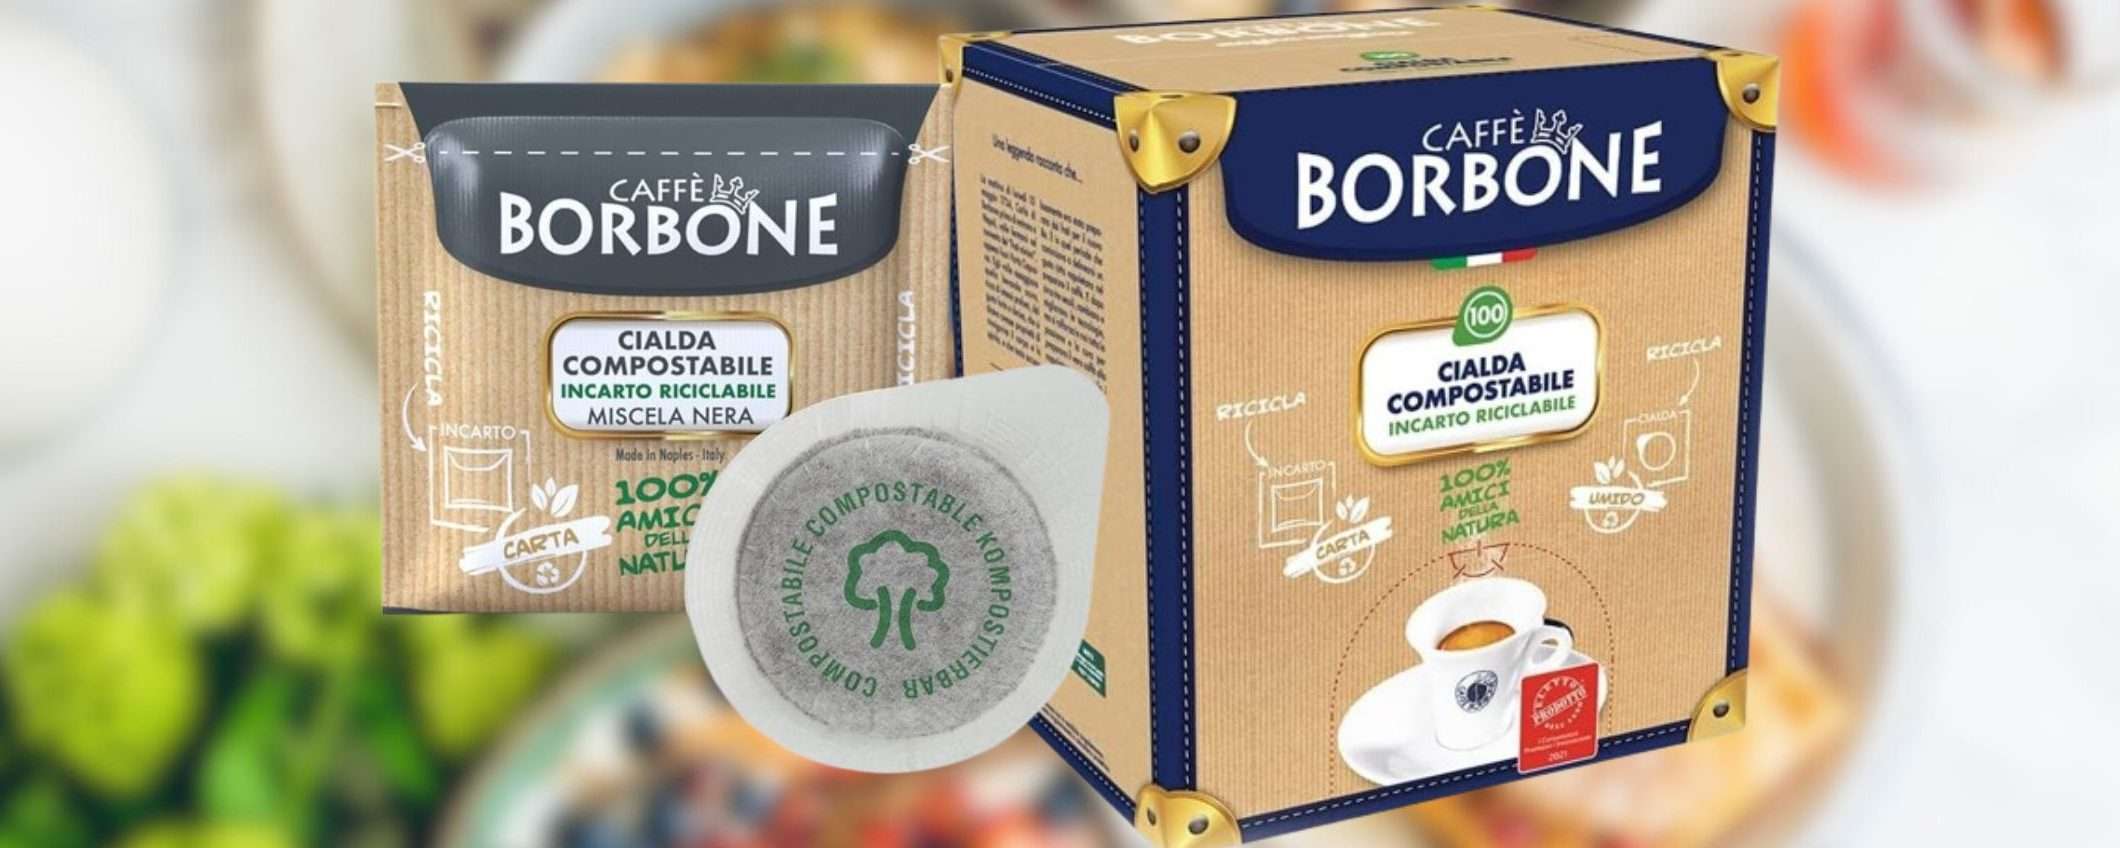 Caffè Borbone: 100 cialde a 15,80€ su Amazon, promo scorta IRRESISTIBILE